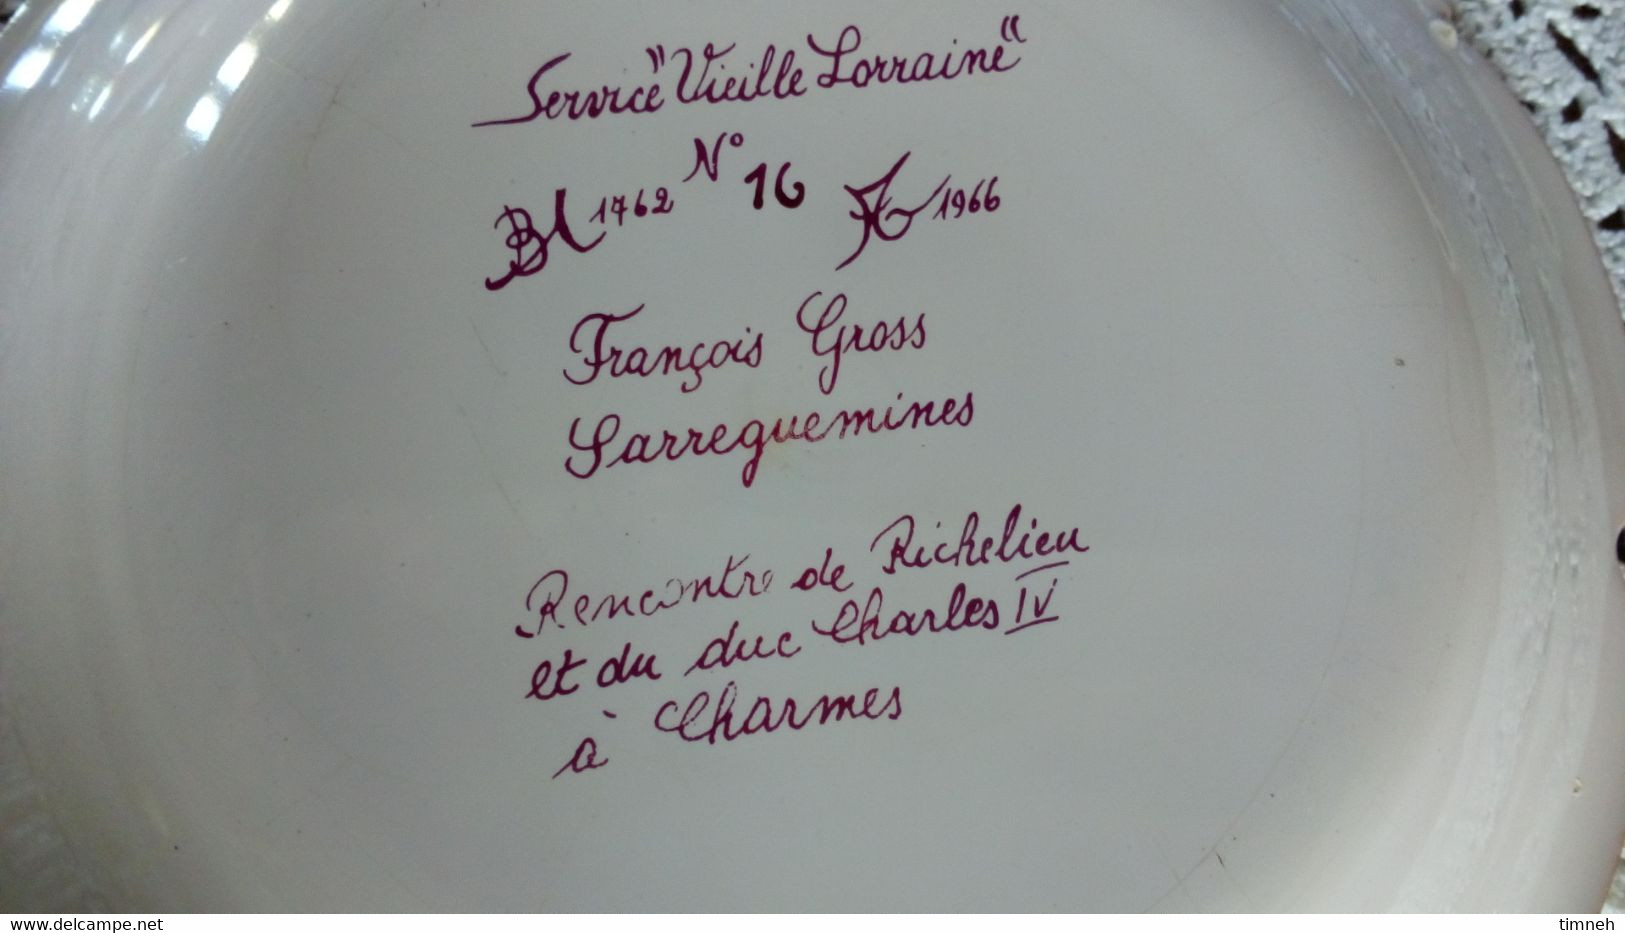 François GROSS Sarreguemines Assiette Creuse CHARMES Richelieu Charles IV  - Service Vieille Lorraine 1966 Bicentenaire - Sarreguemines (FRA)